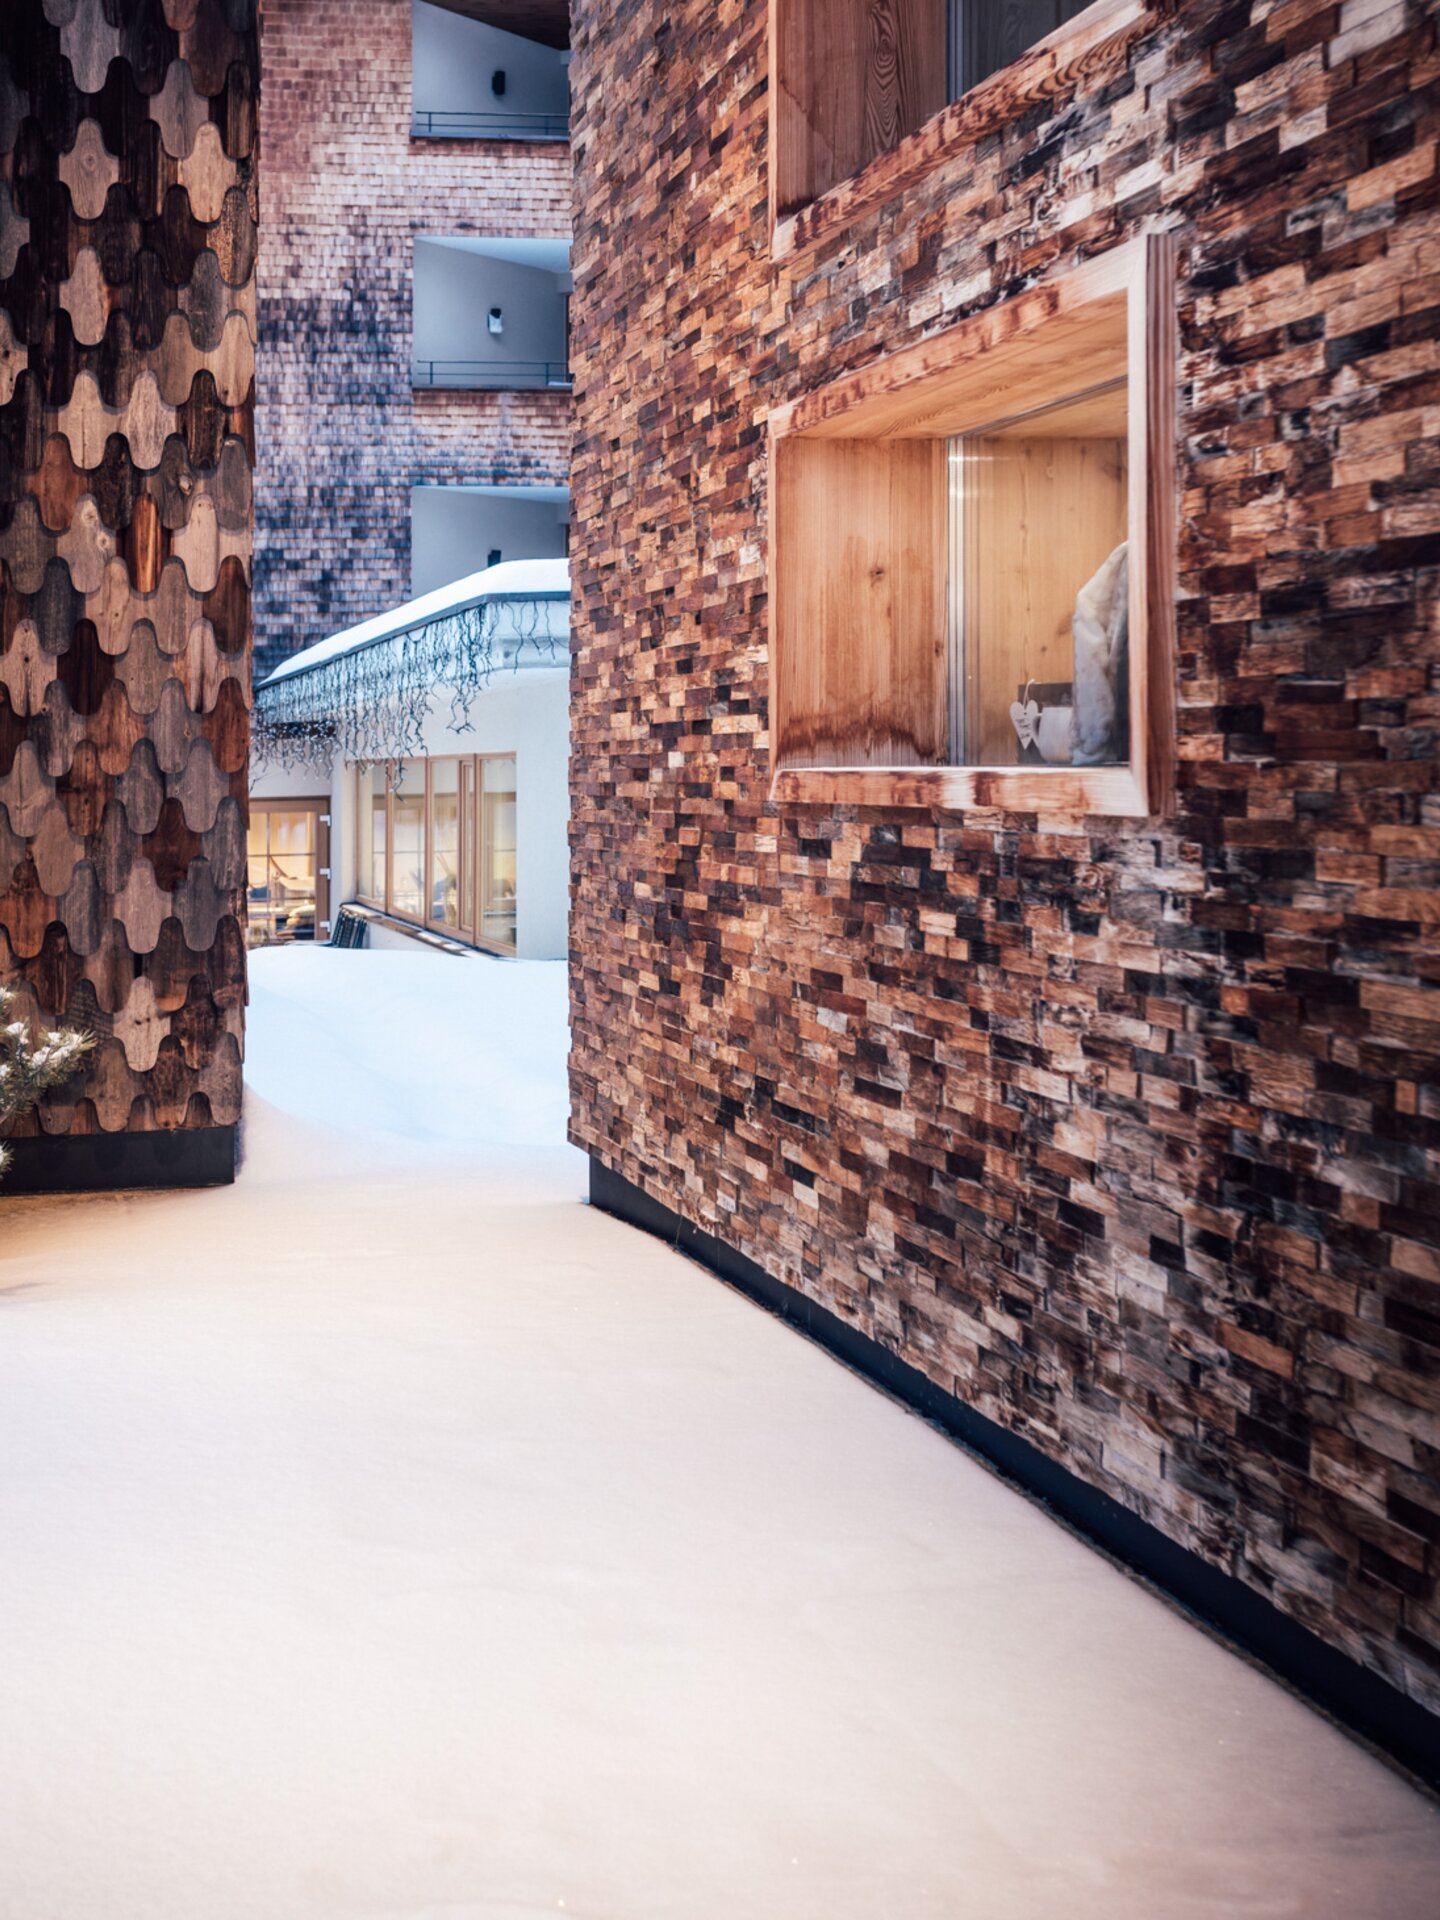 Hausfassade Hotel der Engel im Winter mit Holzschindeln | Der Engel in Tirol